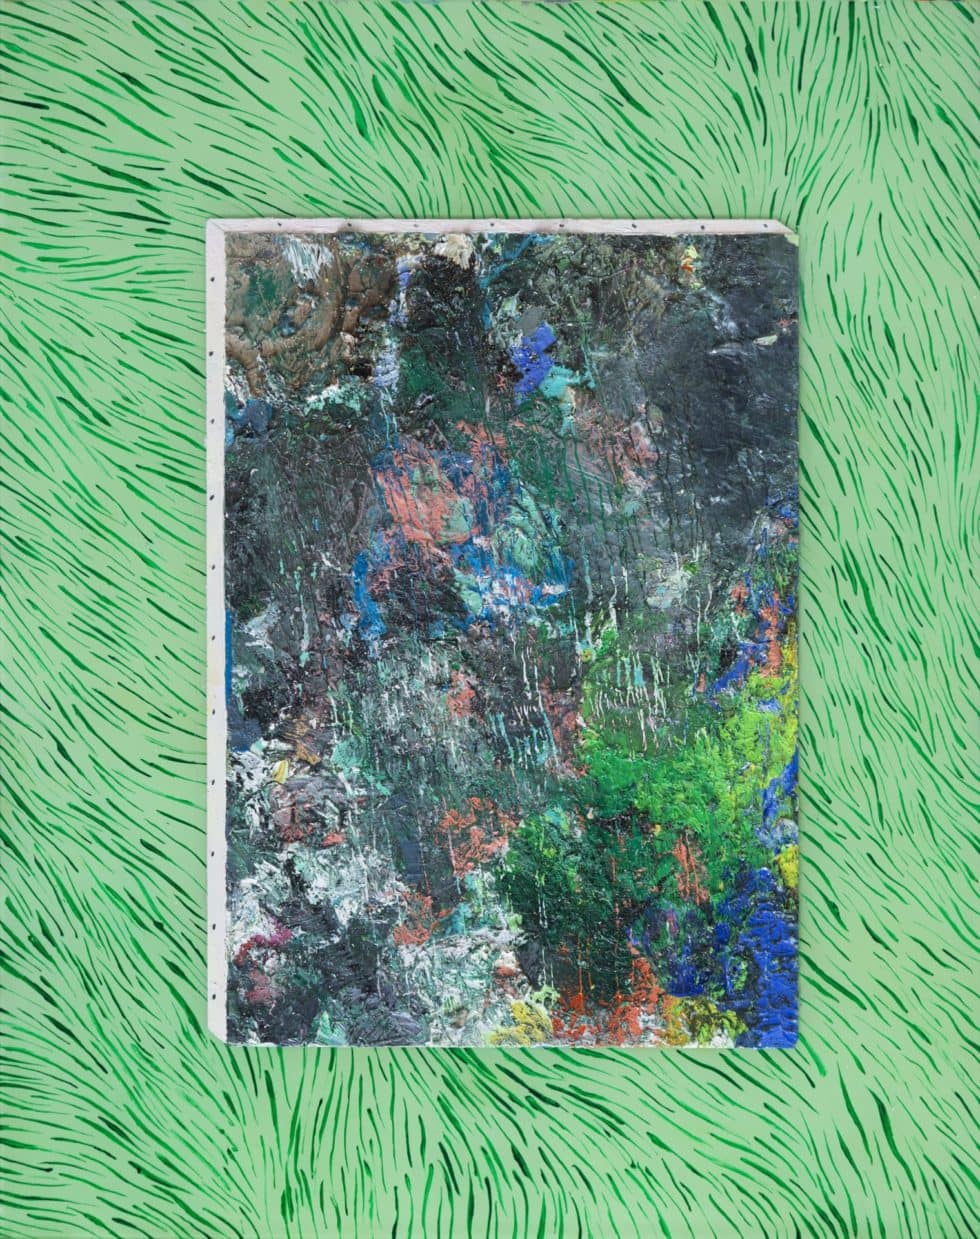 Marius Pons de Vincent, Croûte sur l'herbe, huile sur/sous verre, 35 x 28 cm, 2019